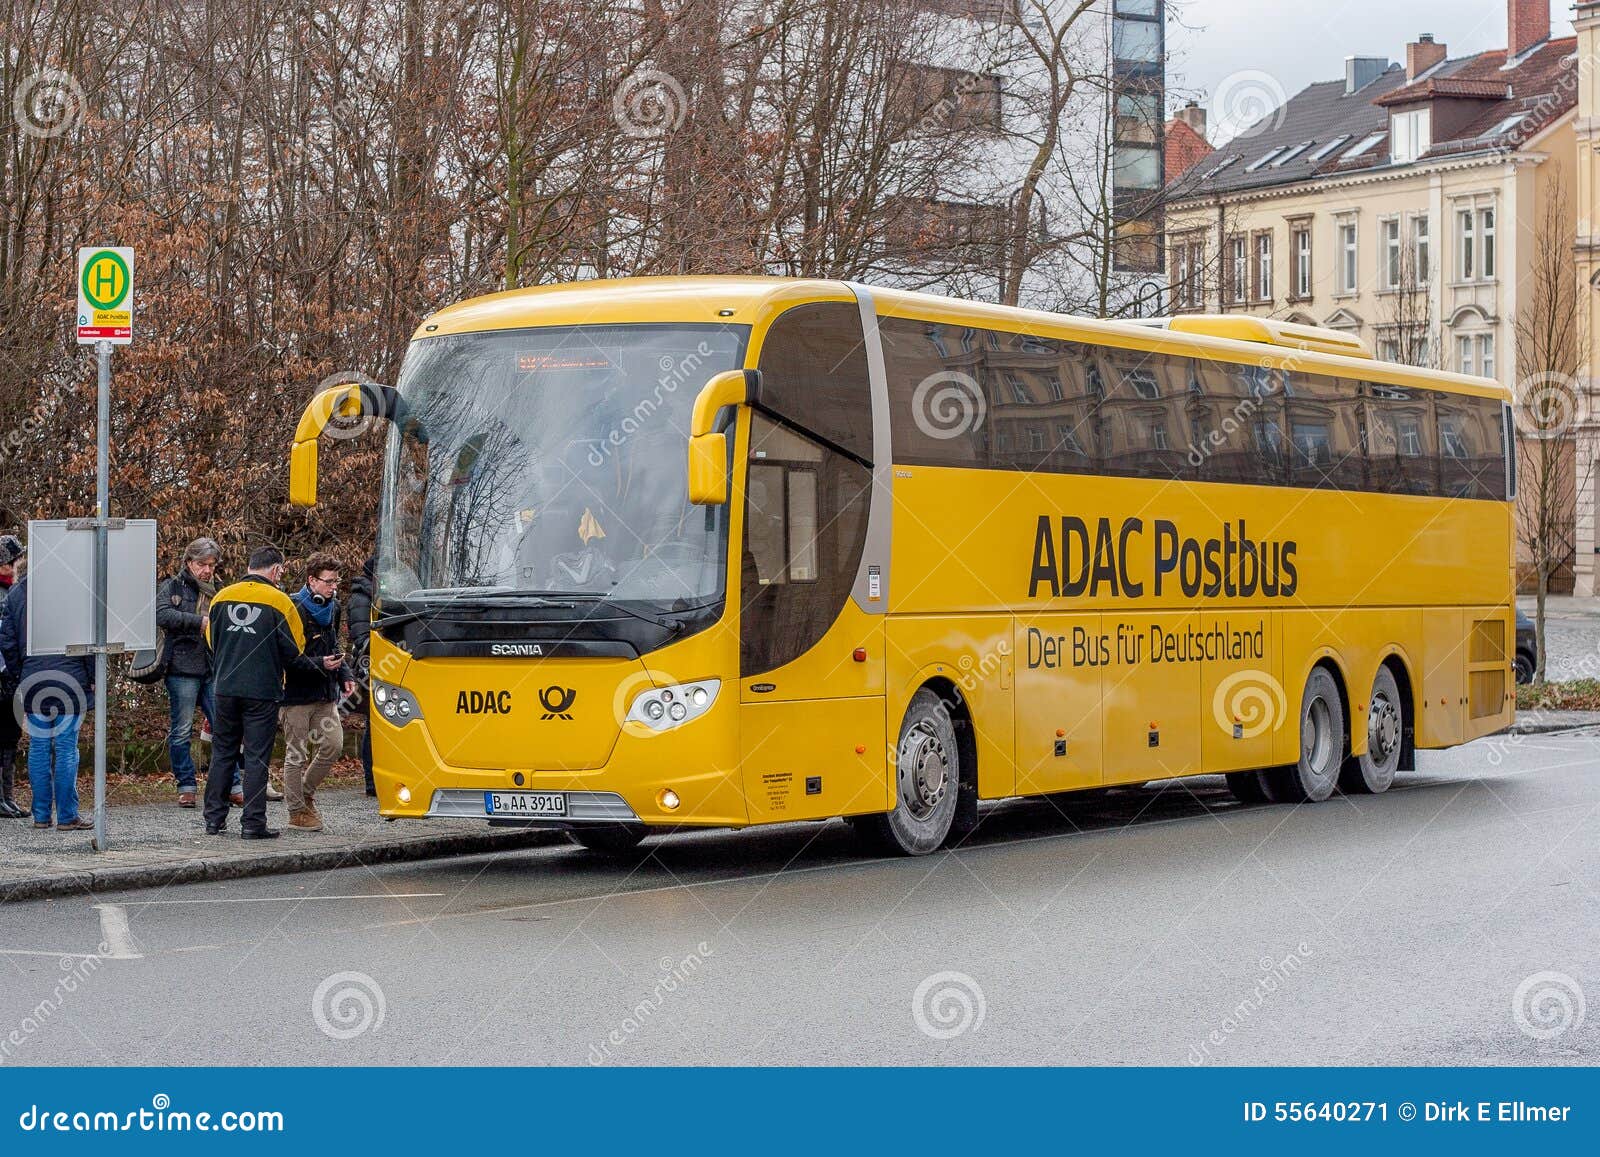 tumor Detecteren Welkom ADAC Postbus - De Bus Voor Duitsland Redactionele Foto - Image of post,  auto: 55640271